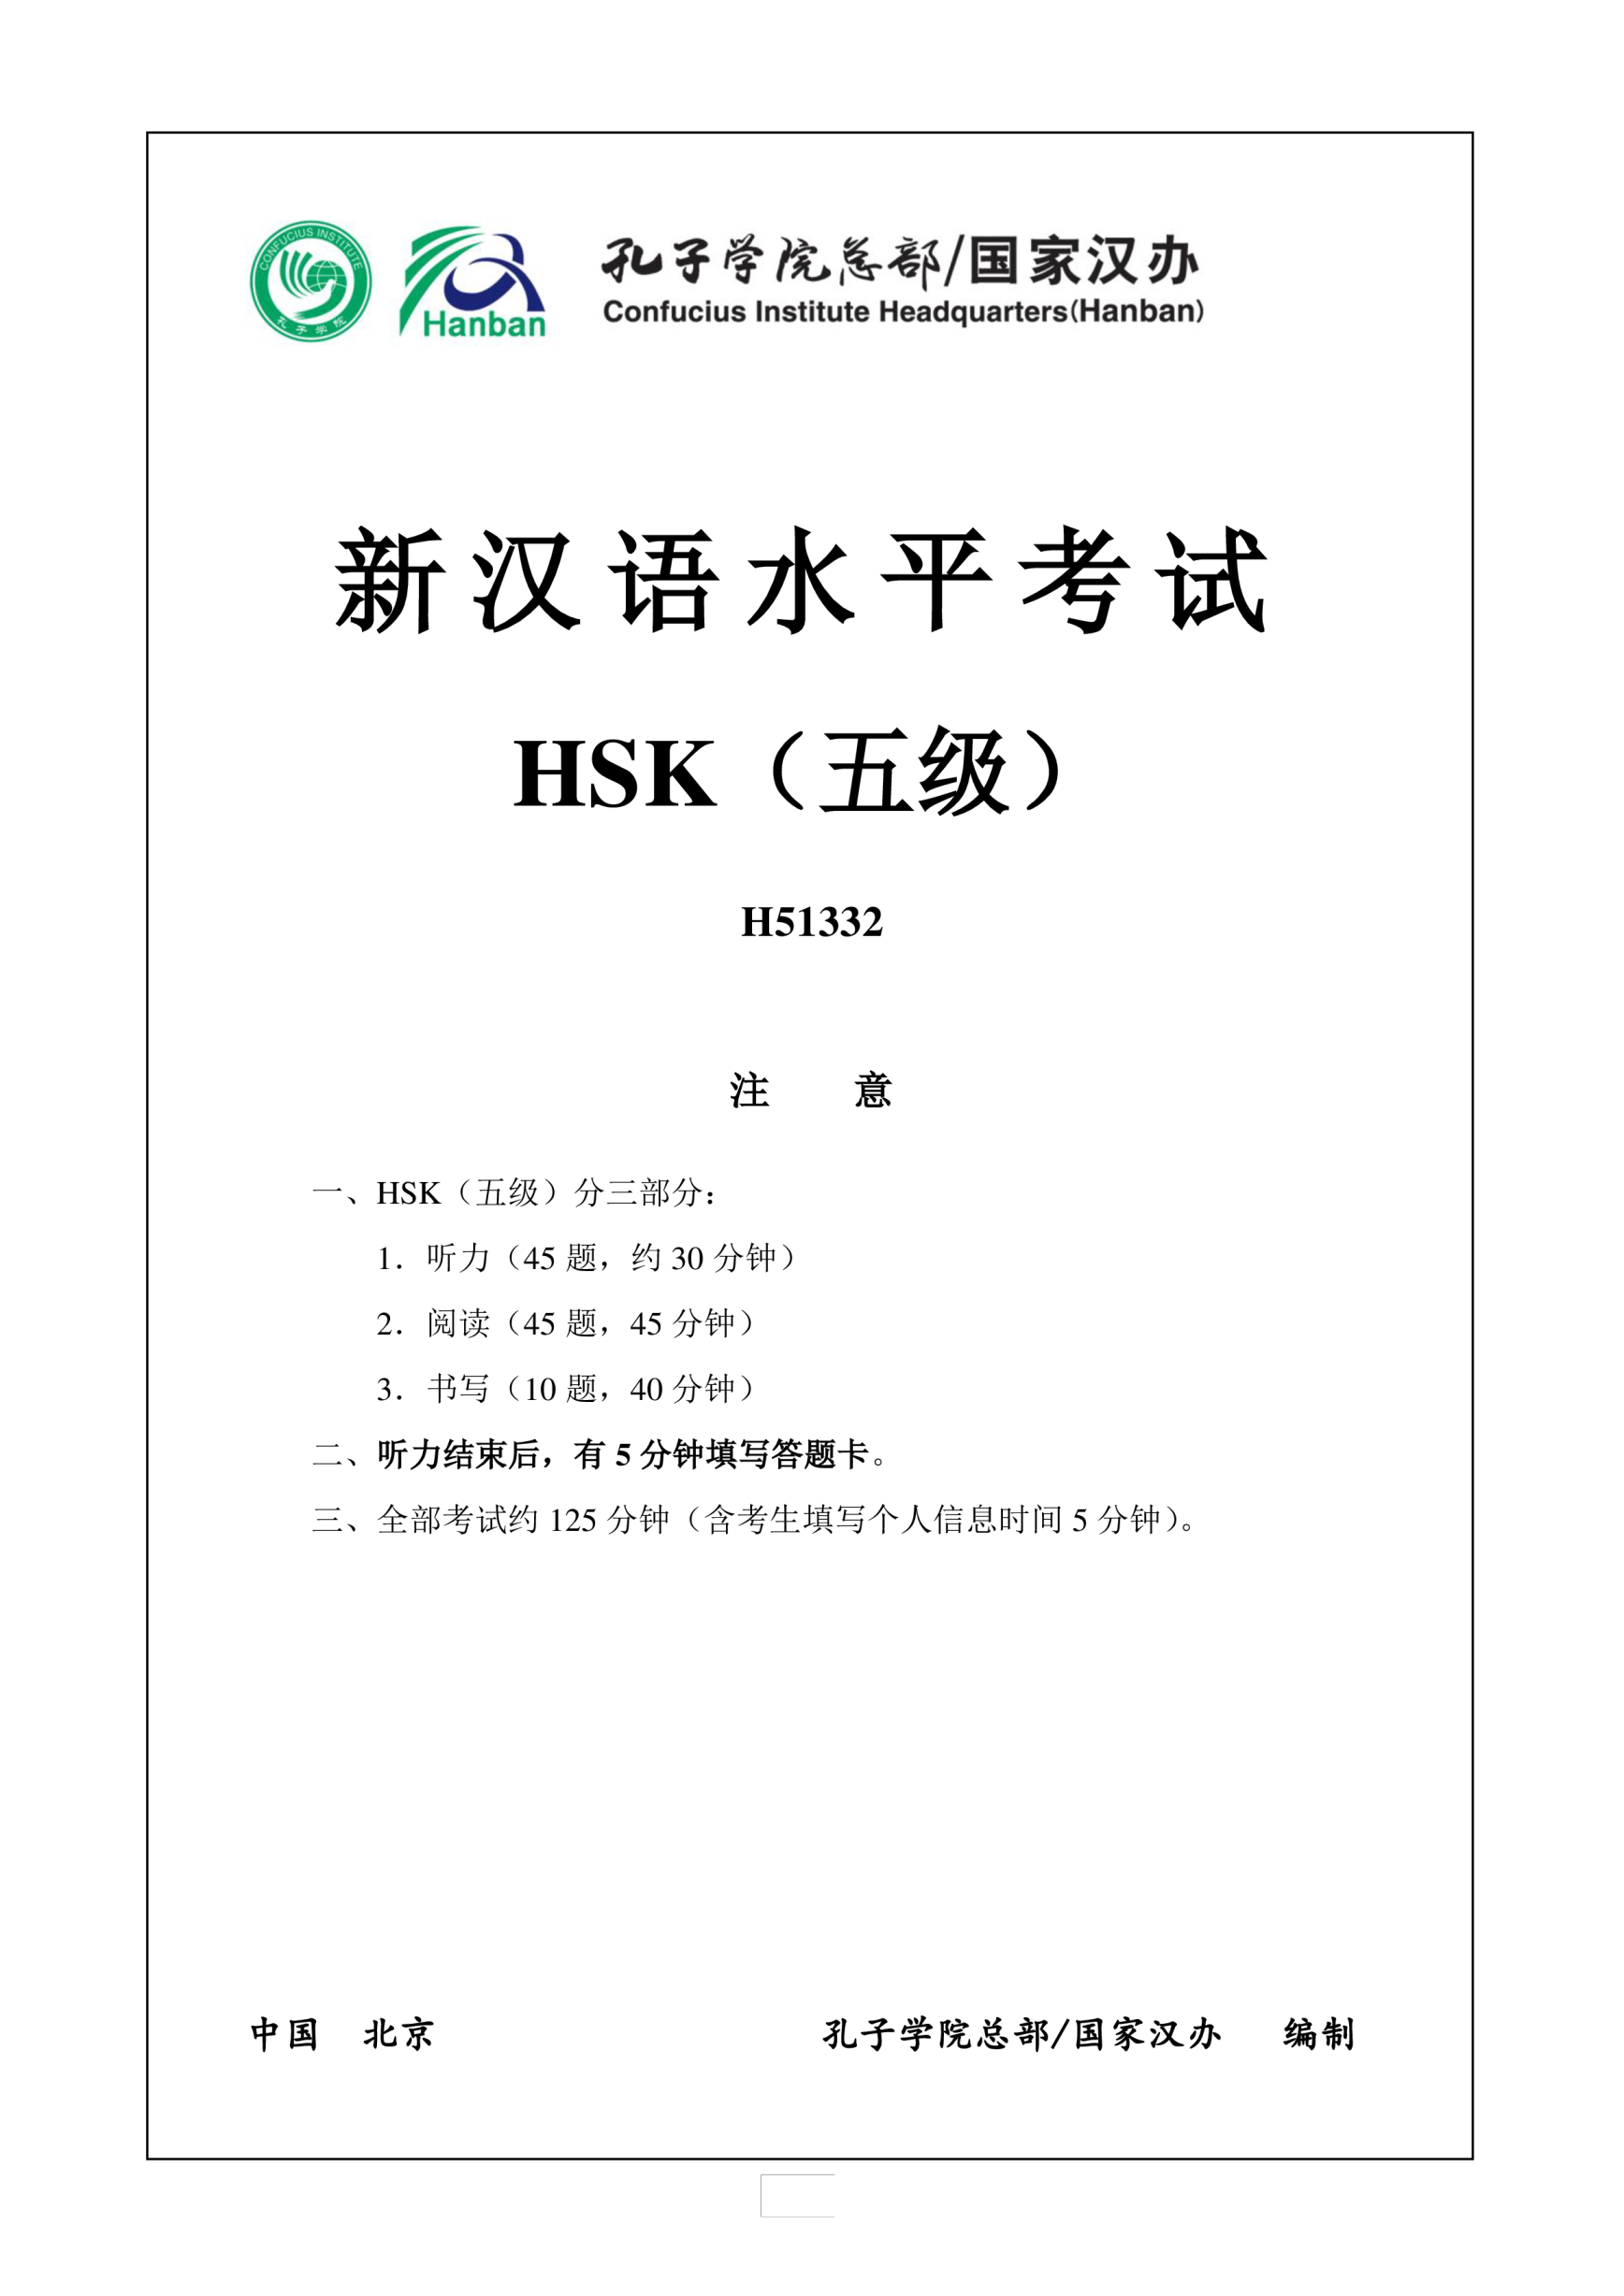 Vorschaubild der VorlageHSK5 Chinese Exam, incl Audio and Answer # H51332